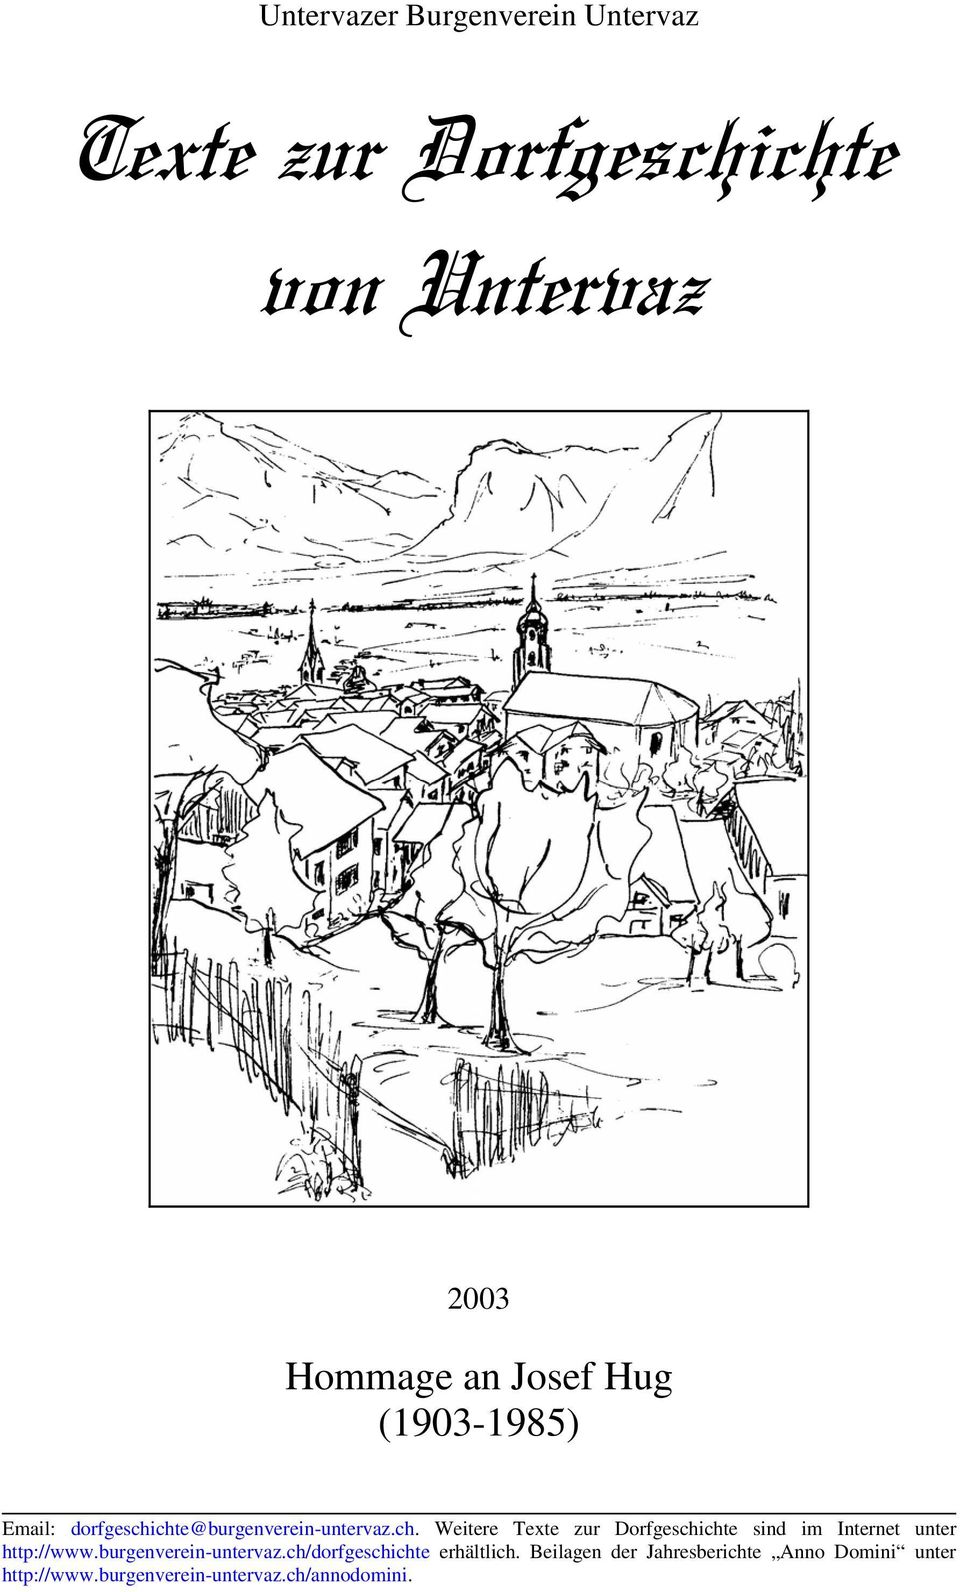 chte@burgenverein-untervaz.ch. Weitere Texte zur Dorfgeschichte sind im Internet unter http://www.